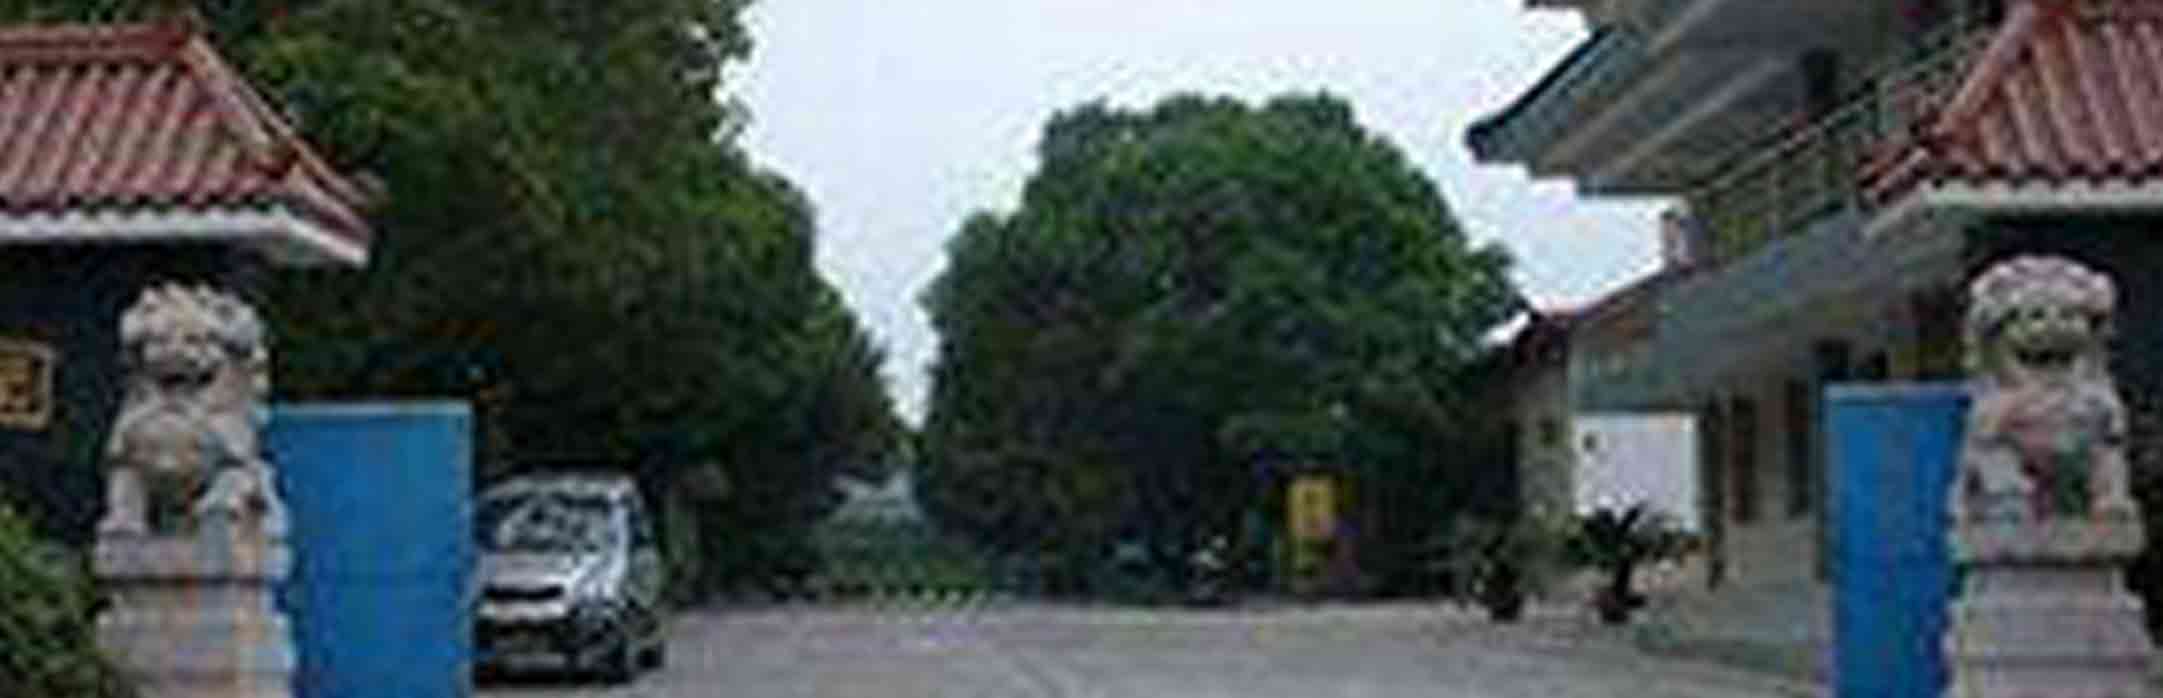 龙王山墓园